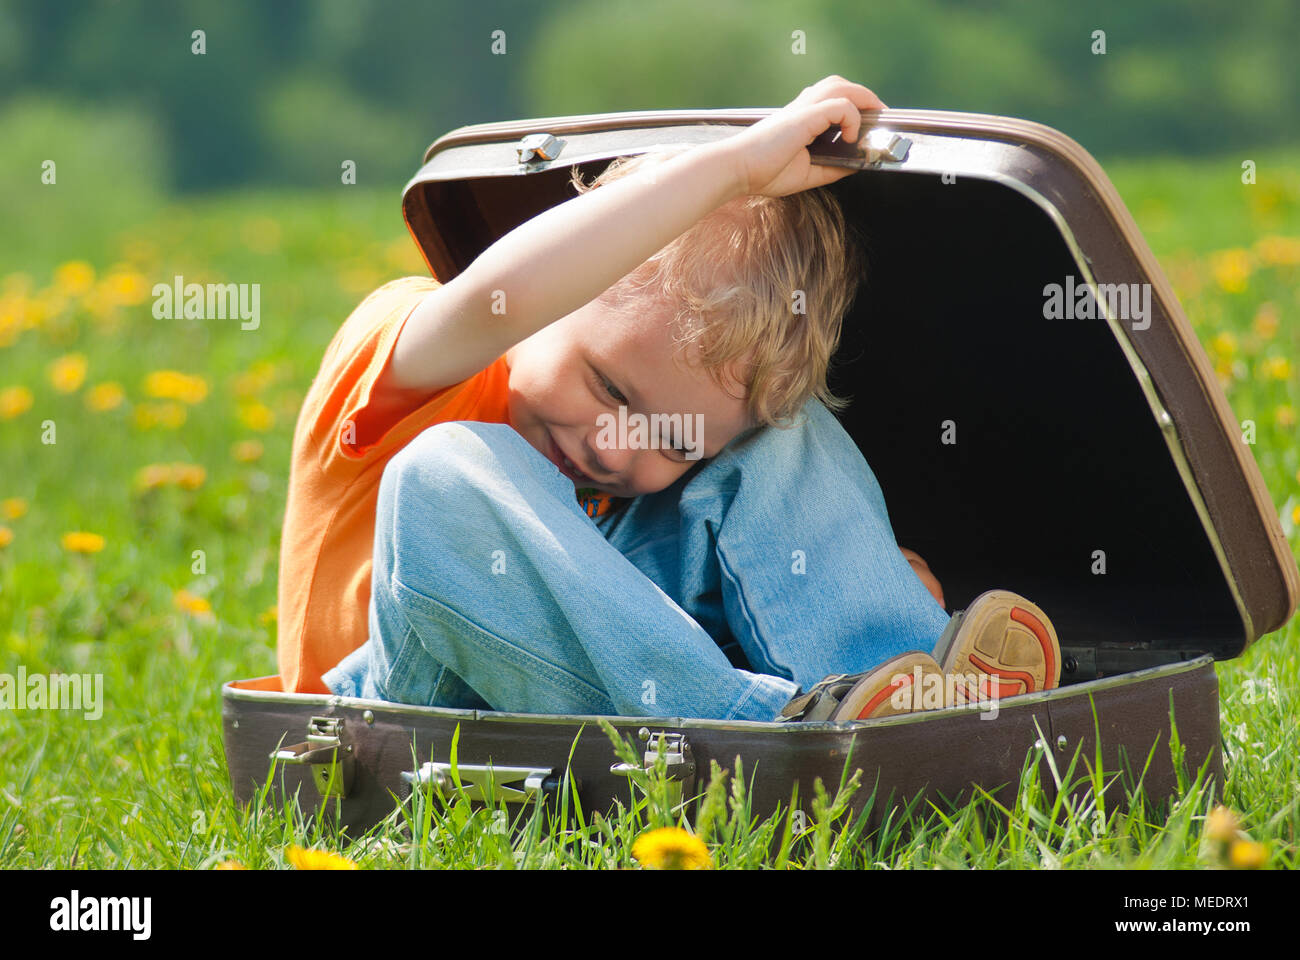 Grazioso piccolo bambino divertente cercando di nascondere all'interno di marrone vintage valigia. Ragazzo ride e sorride felicemente giocando all'aperto sul verde prato pieno Foto Stock